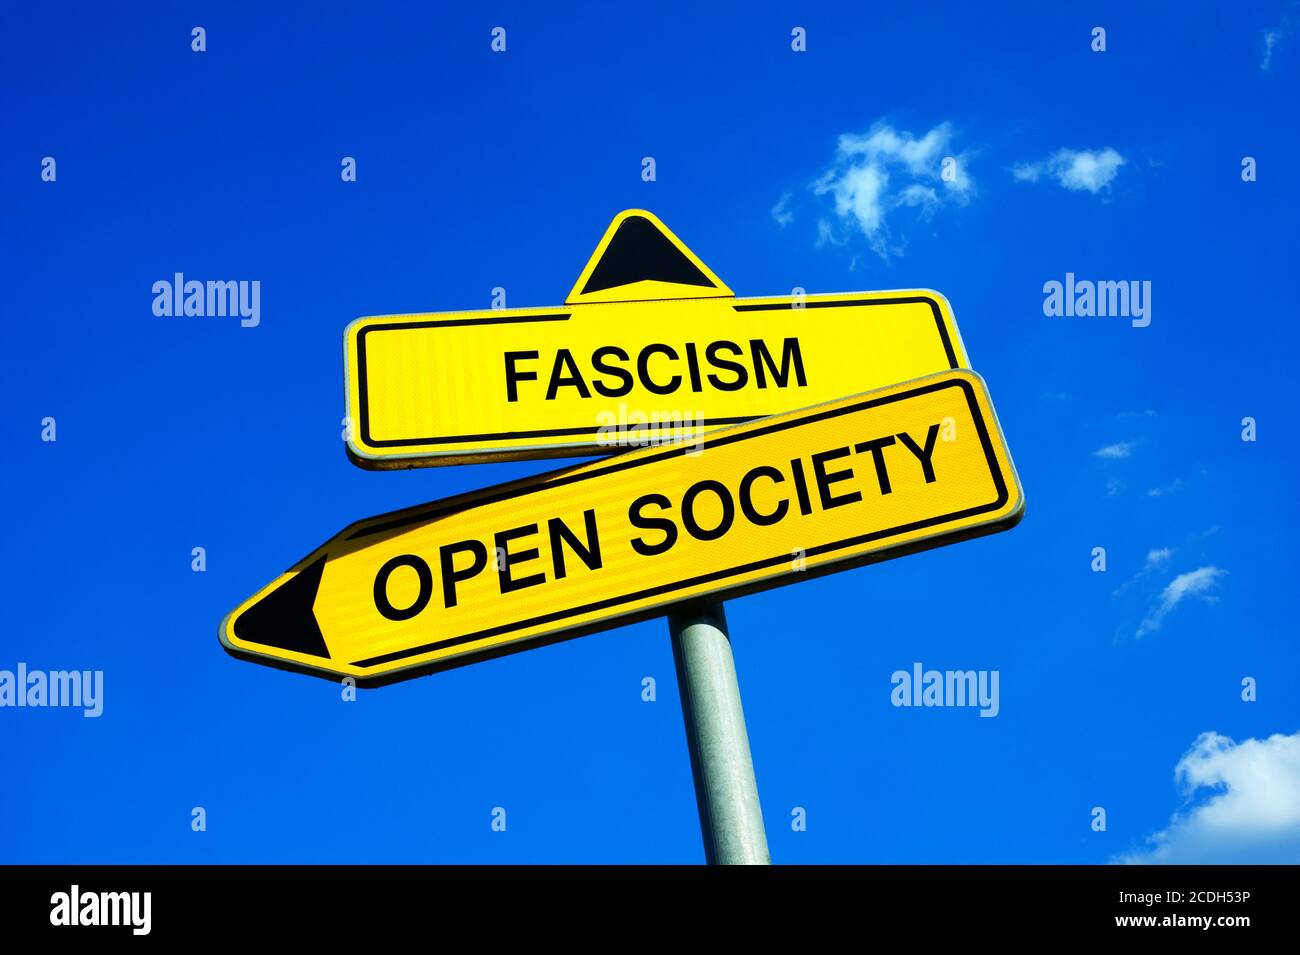 Faschismus oder Offene Gesellschaft - Verkehrszeichen mit zwei Optionen - Wahl auf der Überschrift der Gesellschaft, Staat und Regierung - faschistischer Populismus und Autoritarismus Stockfoto